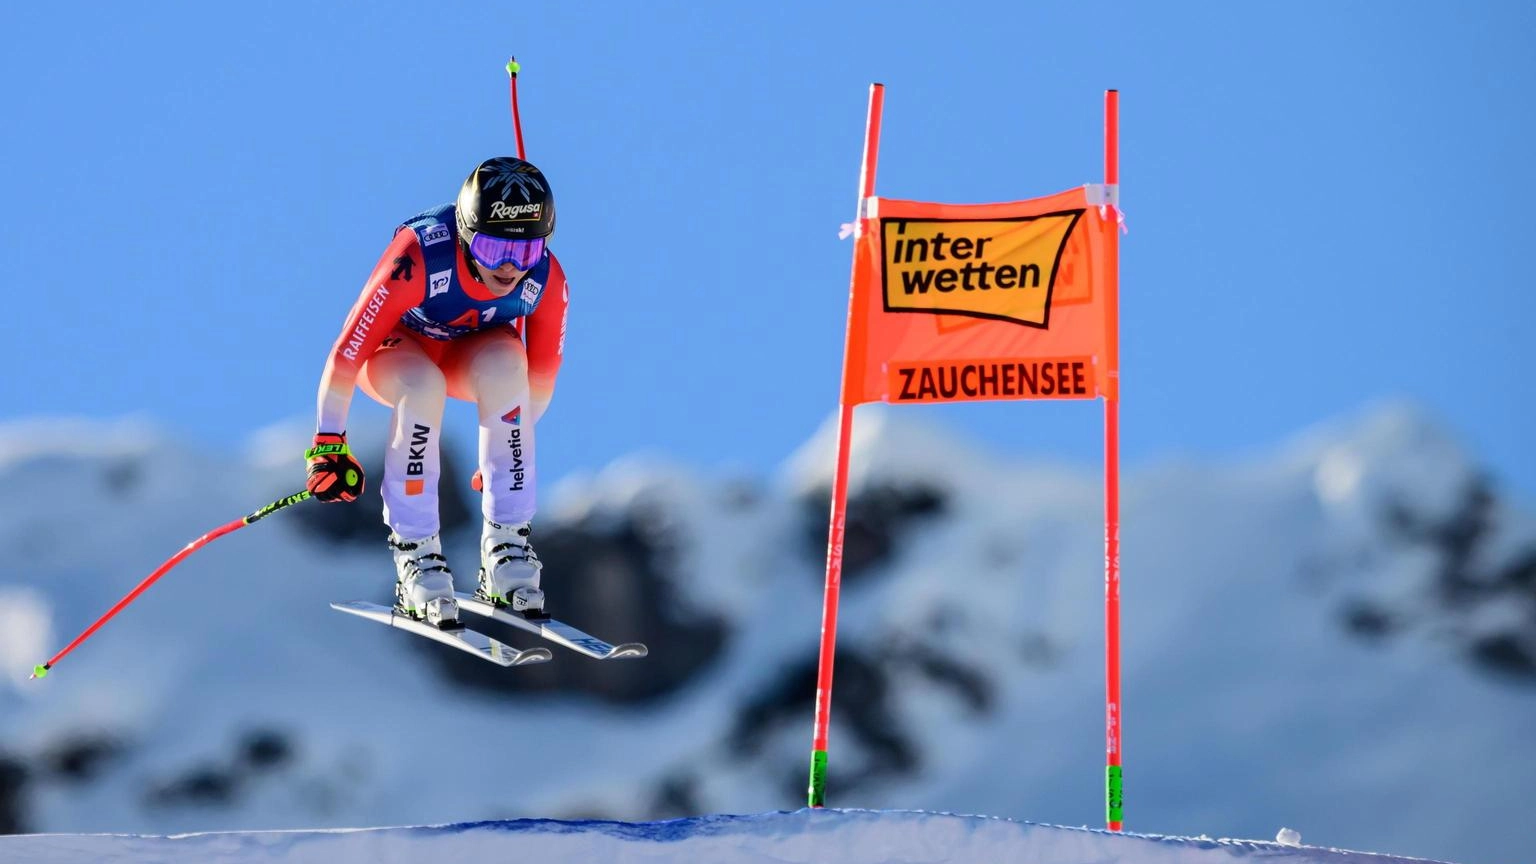 La sciatrice svizzera vince la gara norvegese e si avvicina alla conquista della coppa. Sempre più complessa la lotta in classifica generale per Brignone